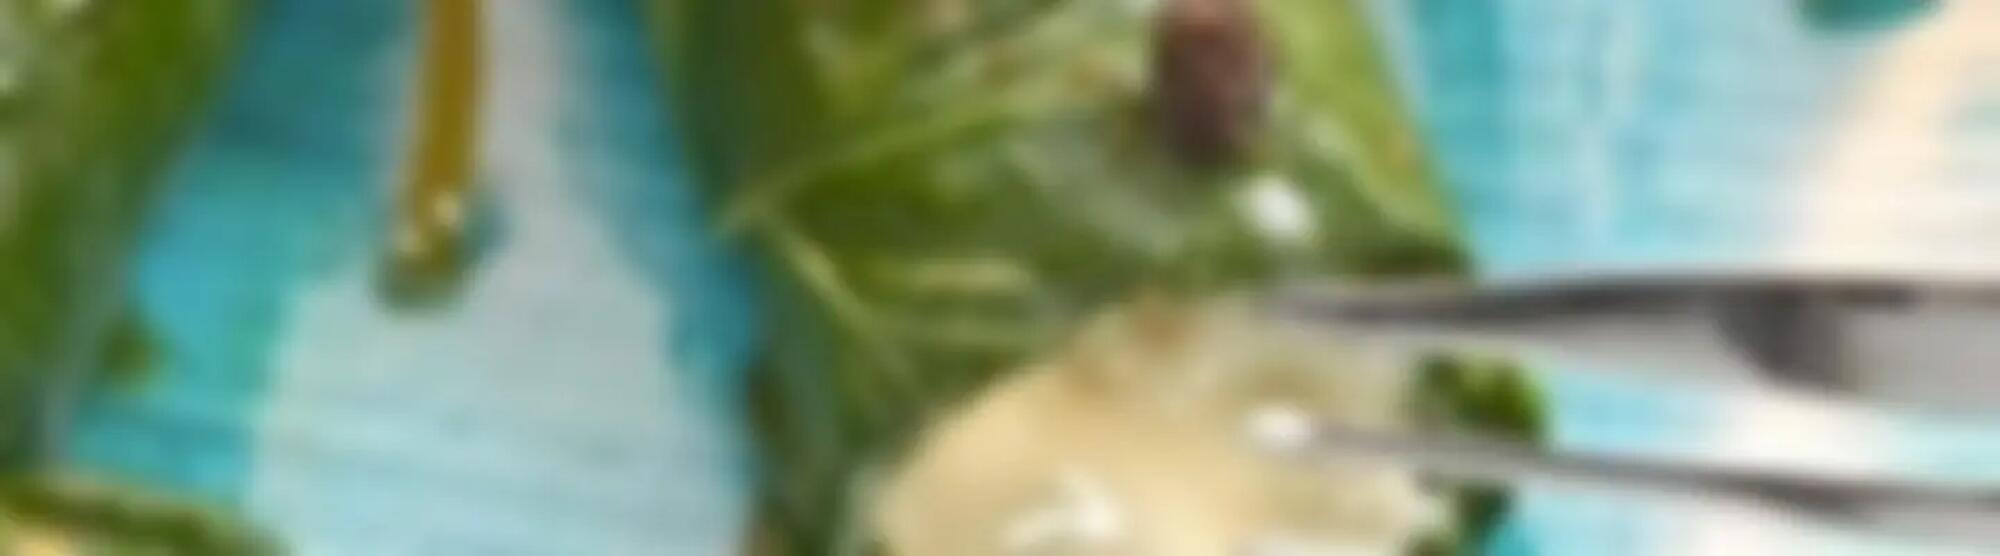 Recette : Paupiettes de maroilles aux feuilles d'épinards